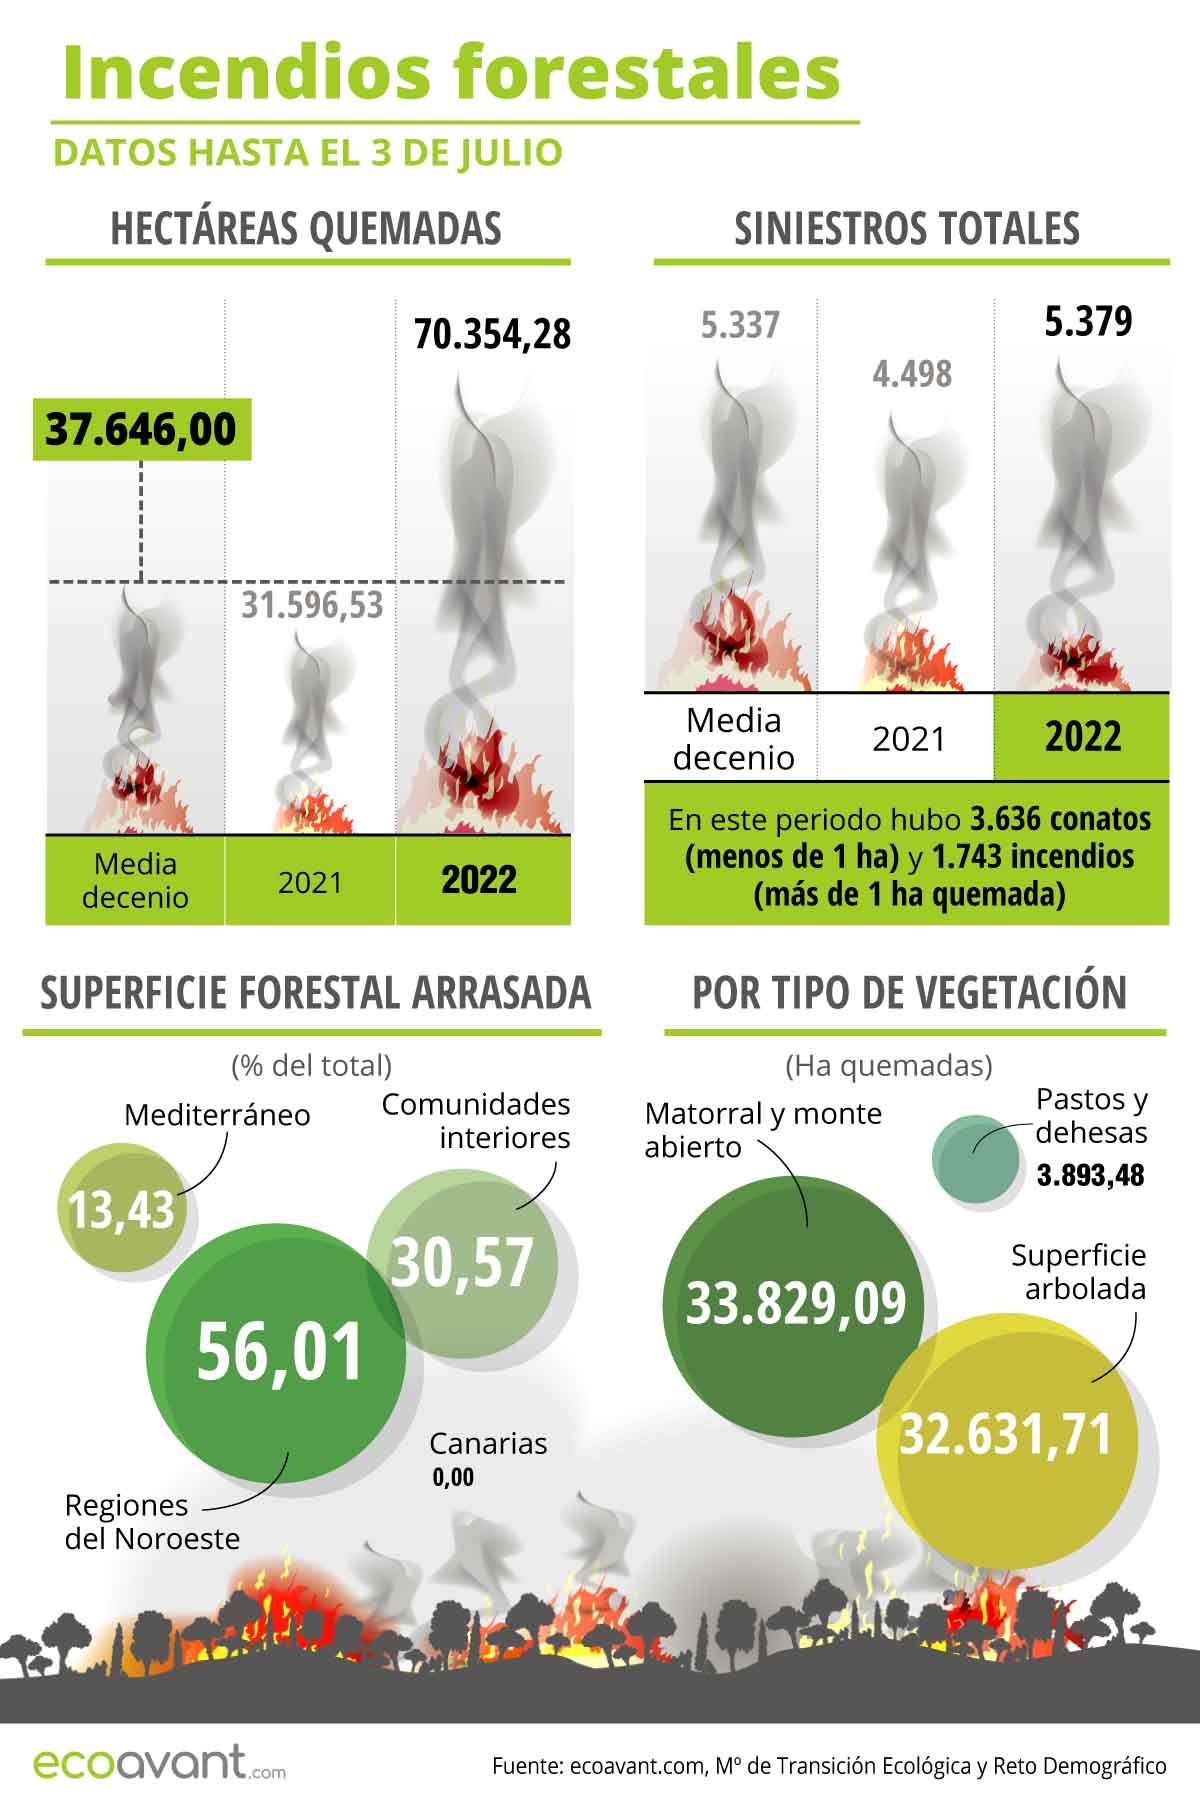 Incendios forestales en España según datos hasta el 26 de junio de 2022 / Imagen: EA